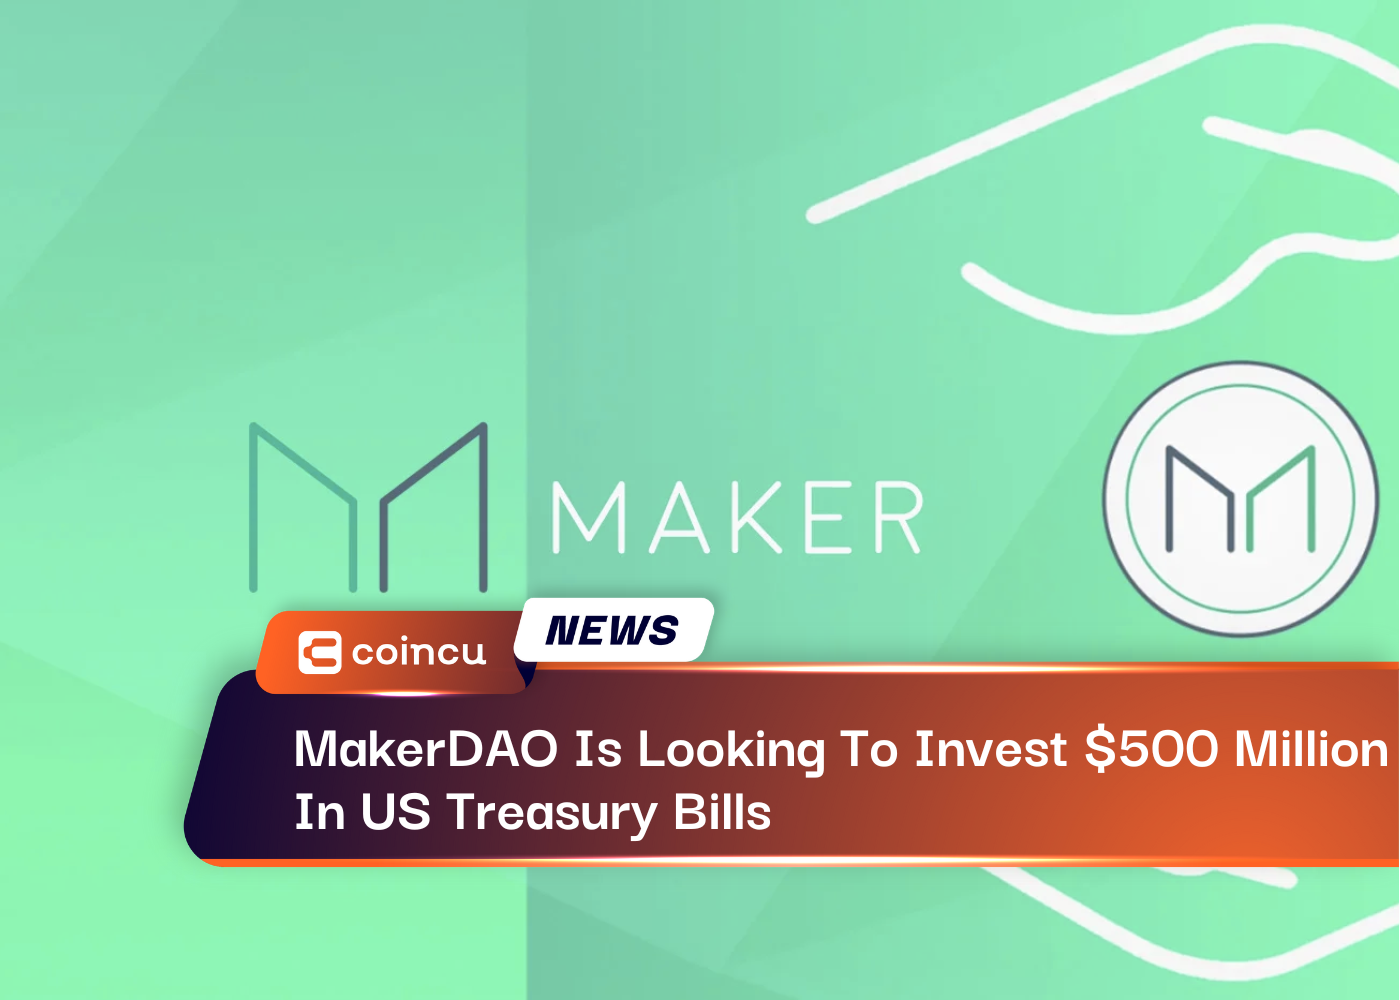 MakerDAO đang tìm cách đầu tư 500 triệu USD vào tín phiếu kho bạc Hoa Kỳ